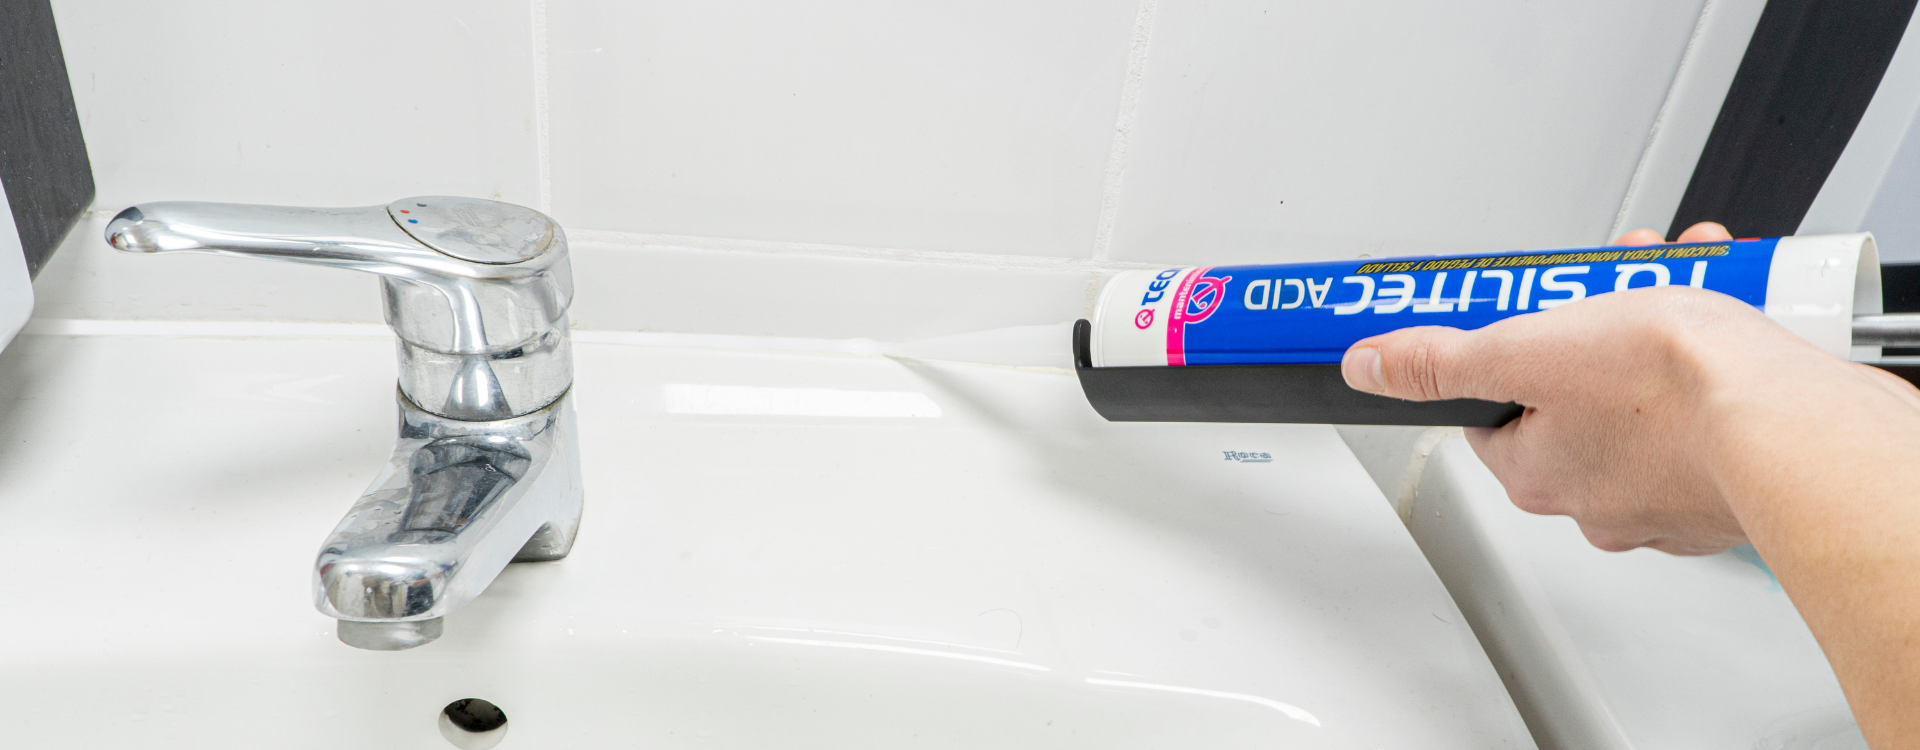 Adhesivo Sealant Fix para accesorios de baño